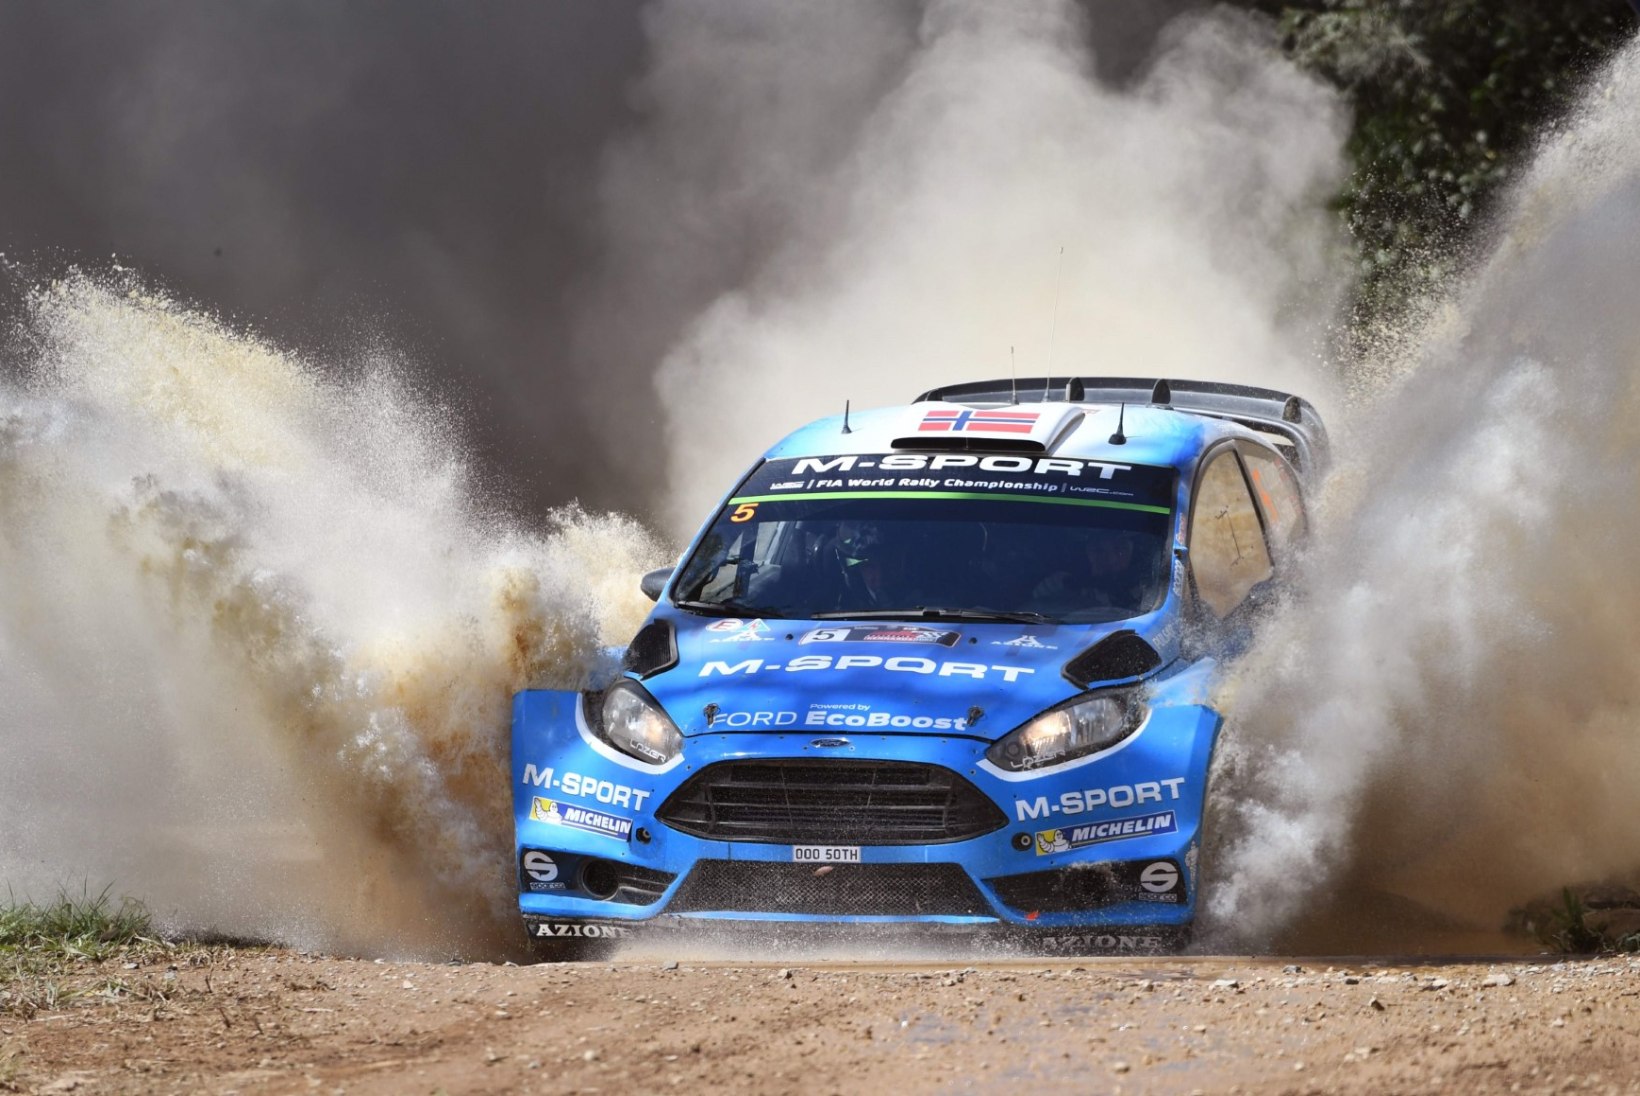 Töötuks jäänud Östberg sõidab järgmine hooaeg ikkagi WRC sarjas